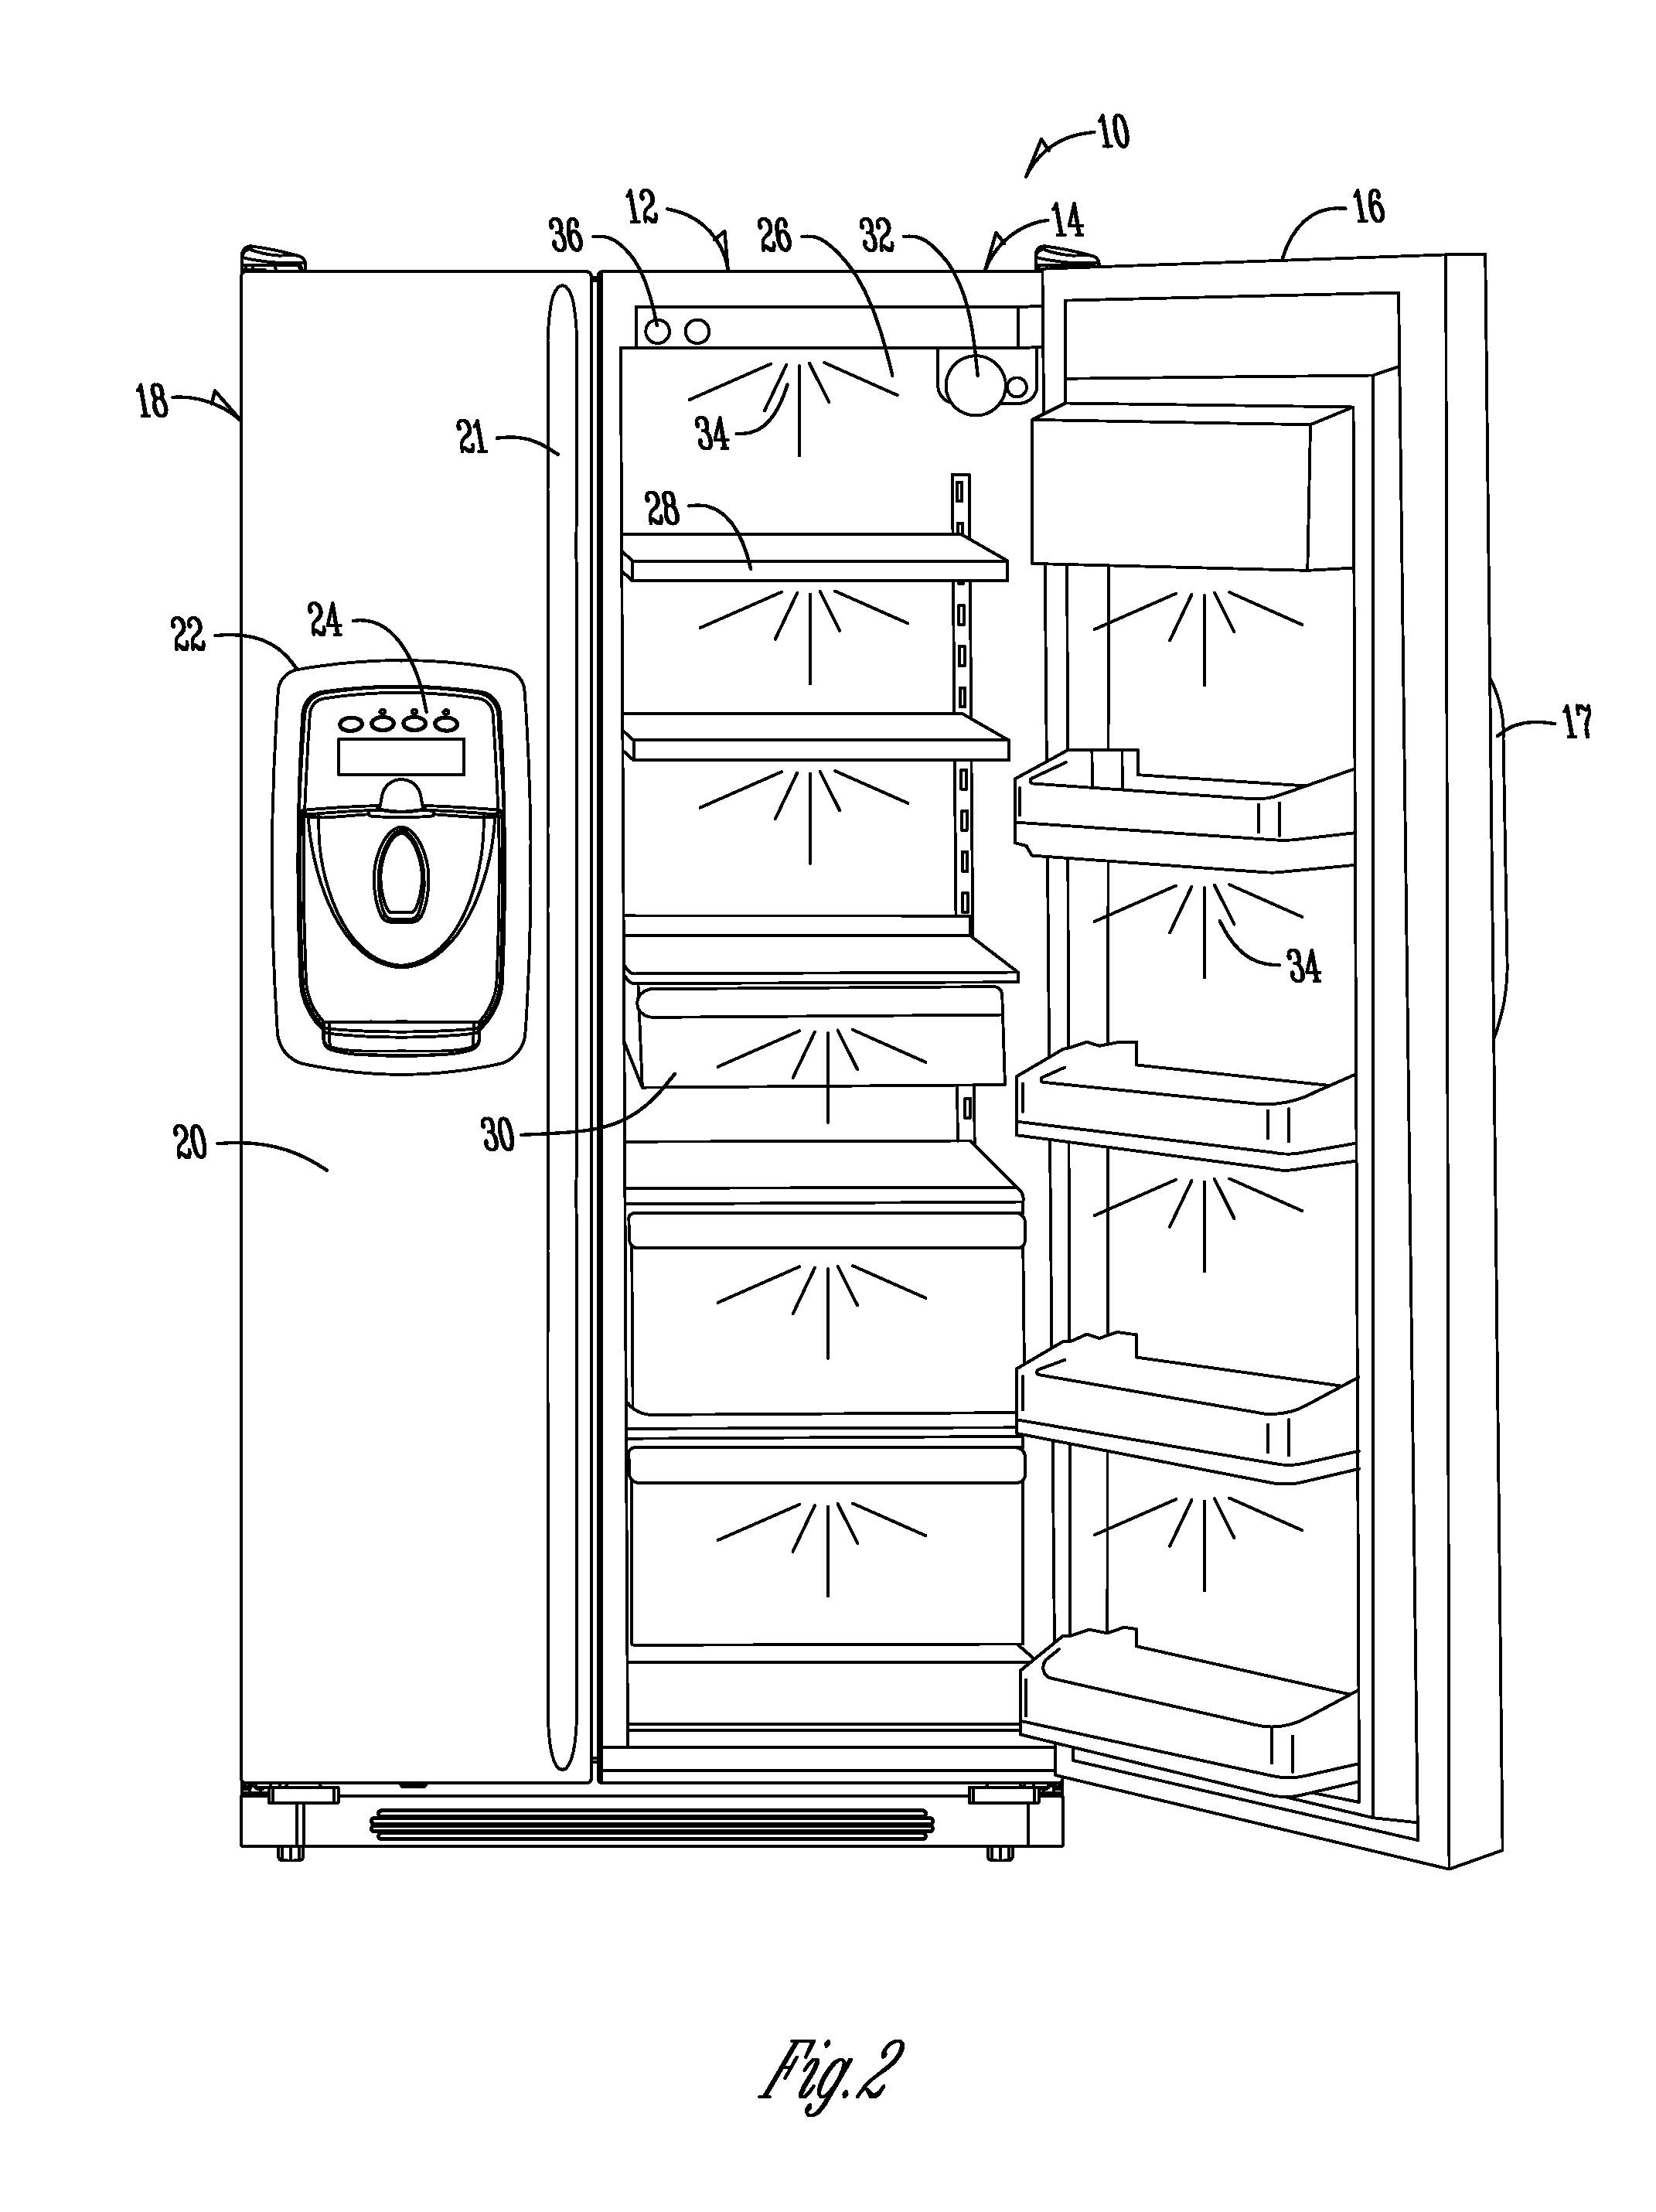 Sensor system for refrigerator